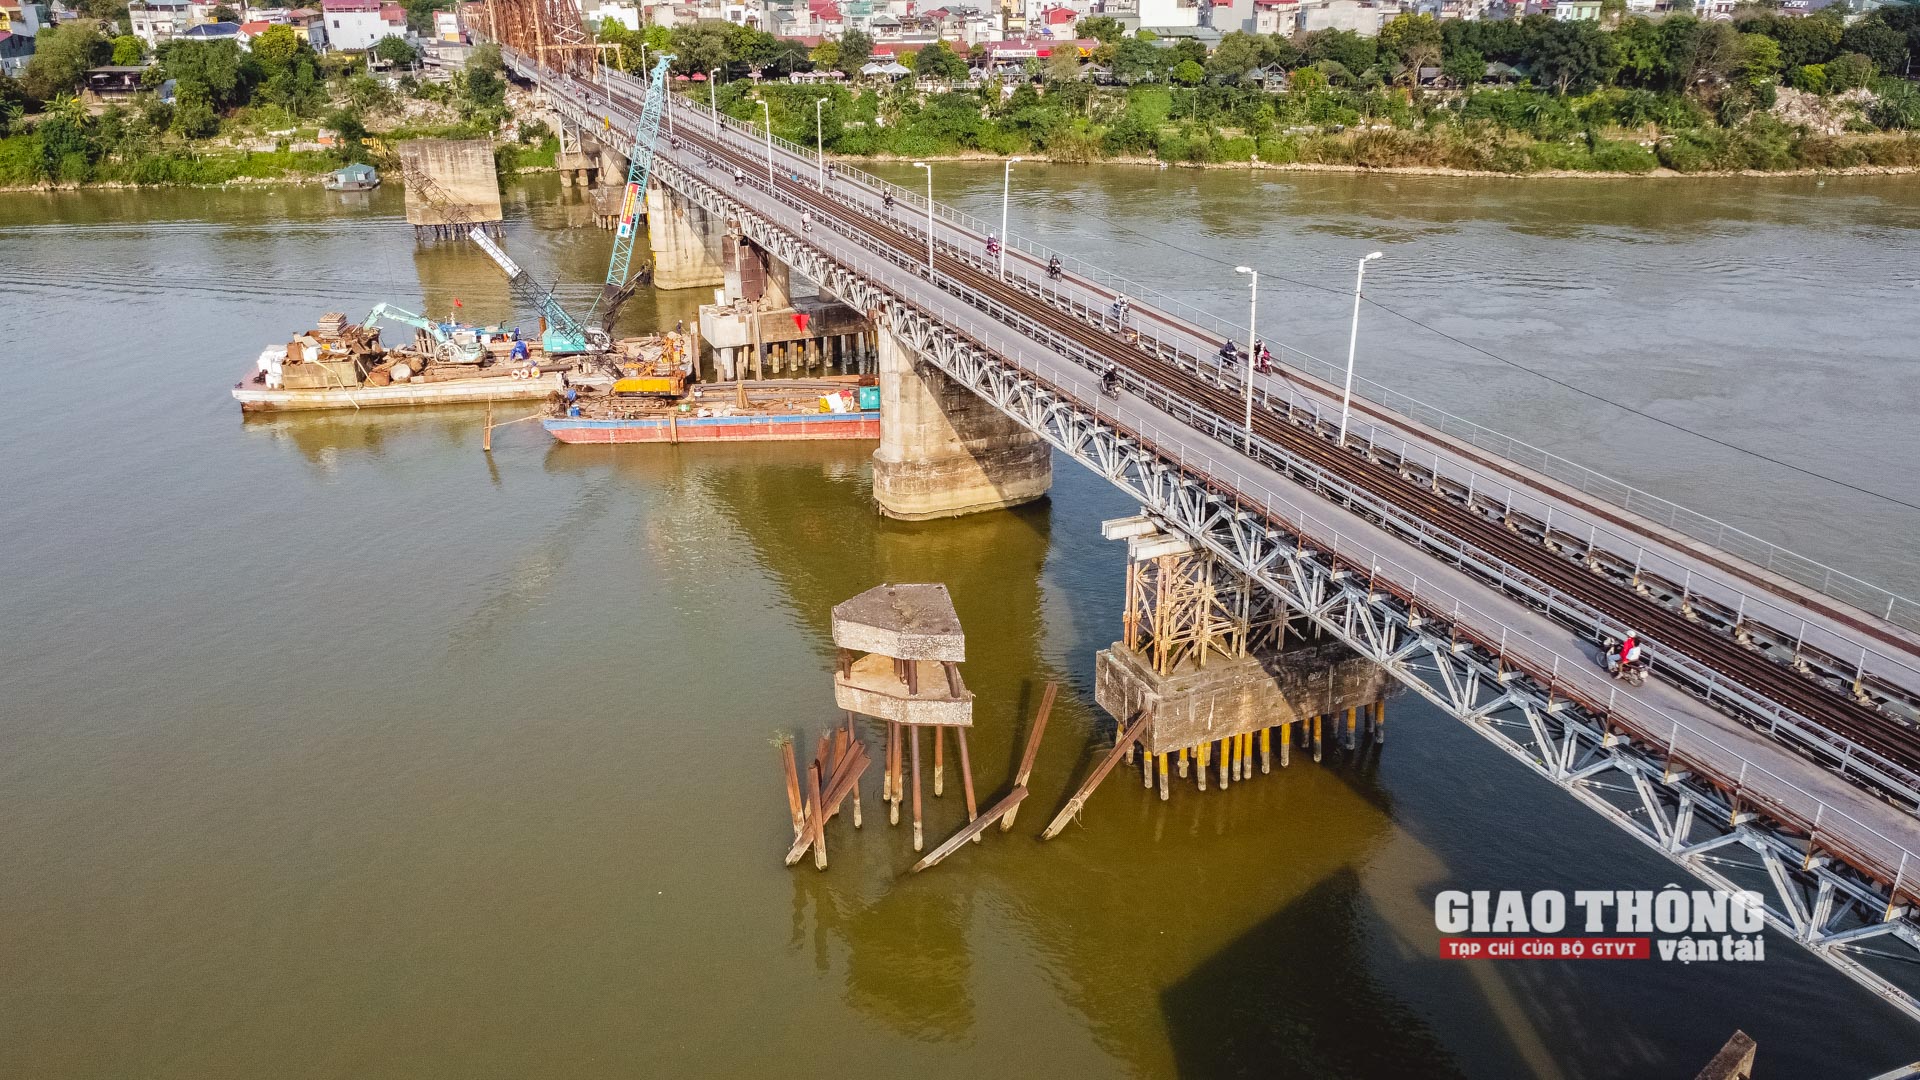 Được biết, kinh phí bảo trì cho cầu Long Biên năm 2022 khoảng 8 tỷ, đáp ứng khoảng gần 50% nhu cầu. 